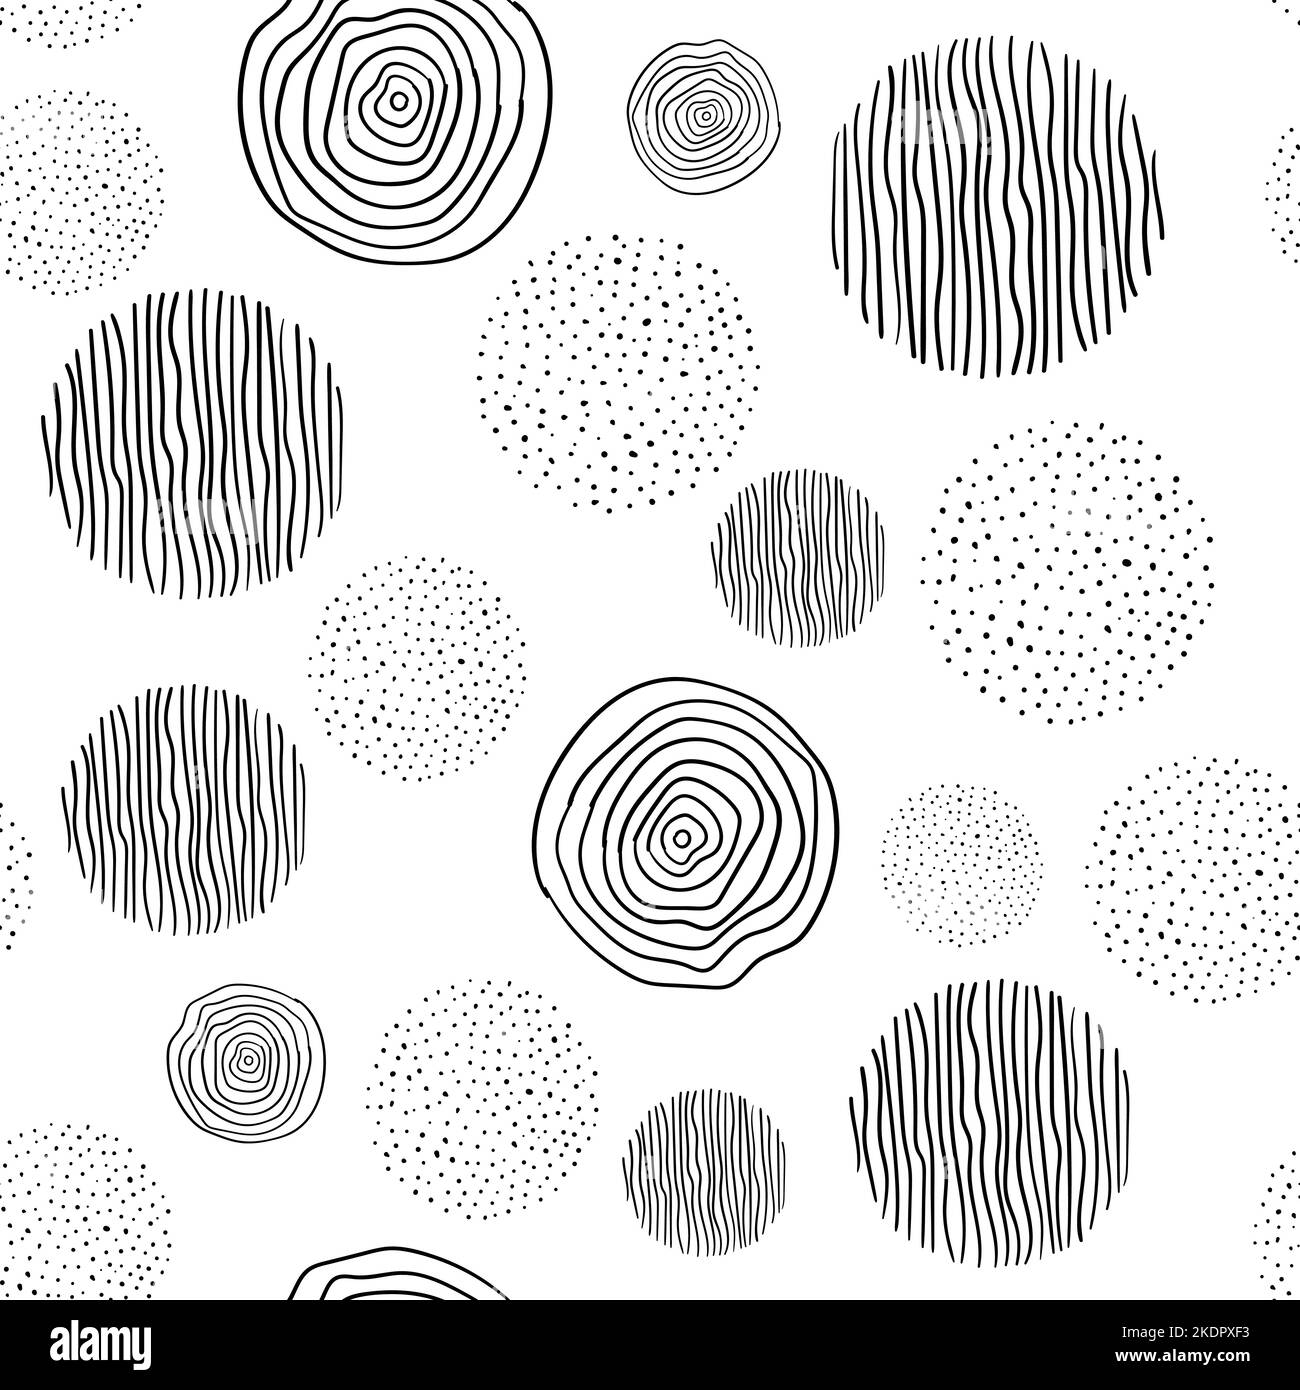 Abstraktes, nahtloses Muster mit von Hand gezeichneten gepunkteten Kreisen. Schwarz-weißer Hintergrund für Tapete, Stoffdruck-Design Stock Vektor